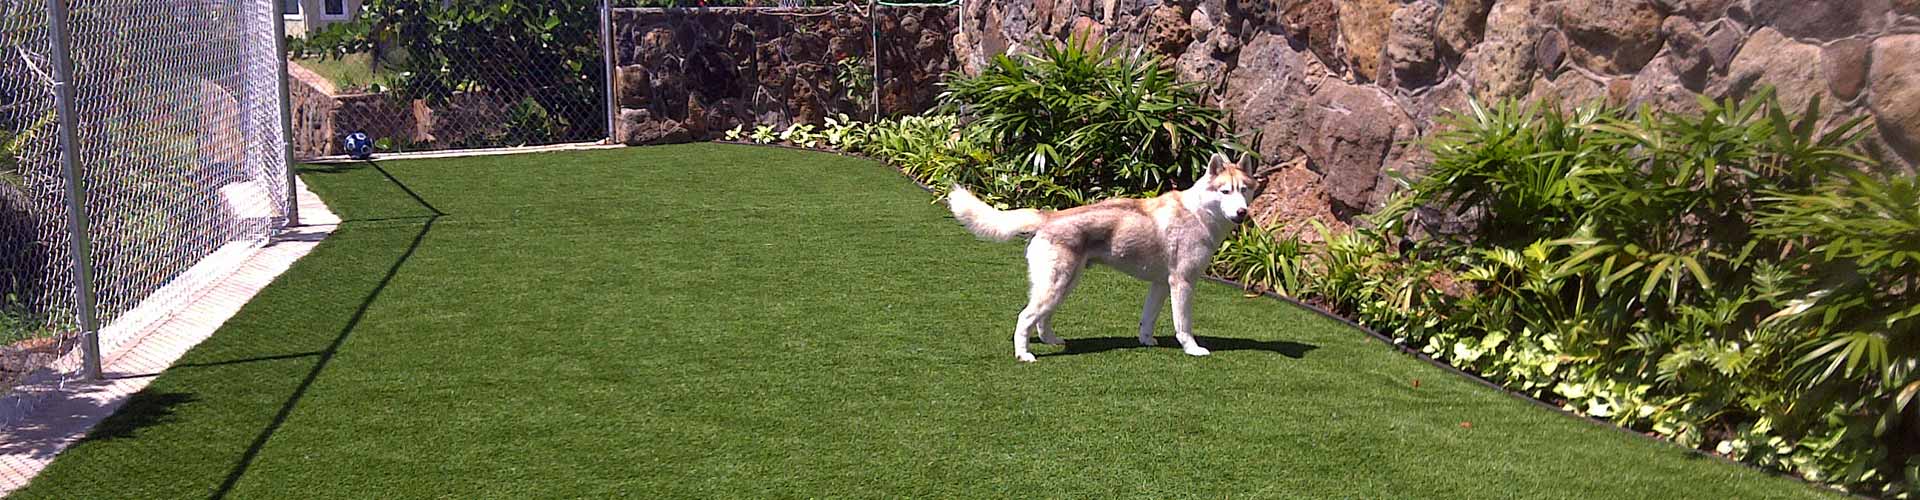 Fake grass dog run installation in Hawaii